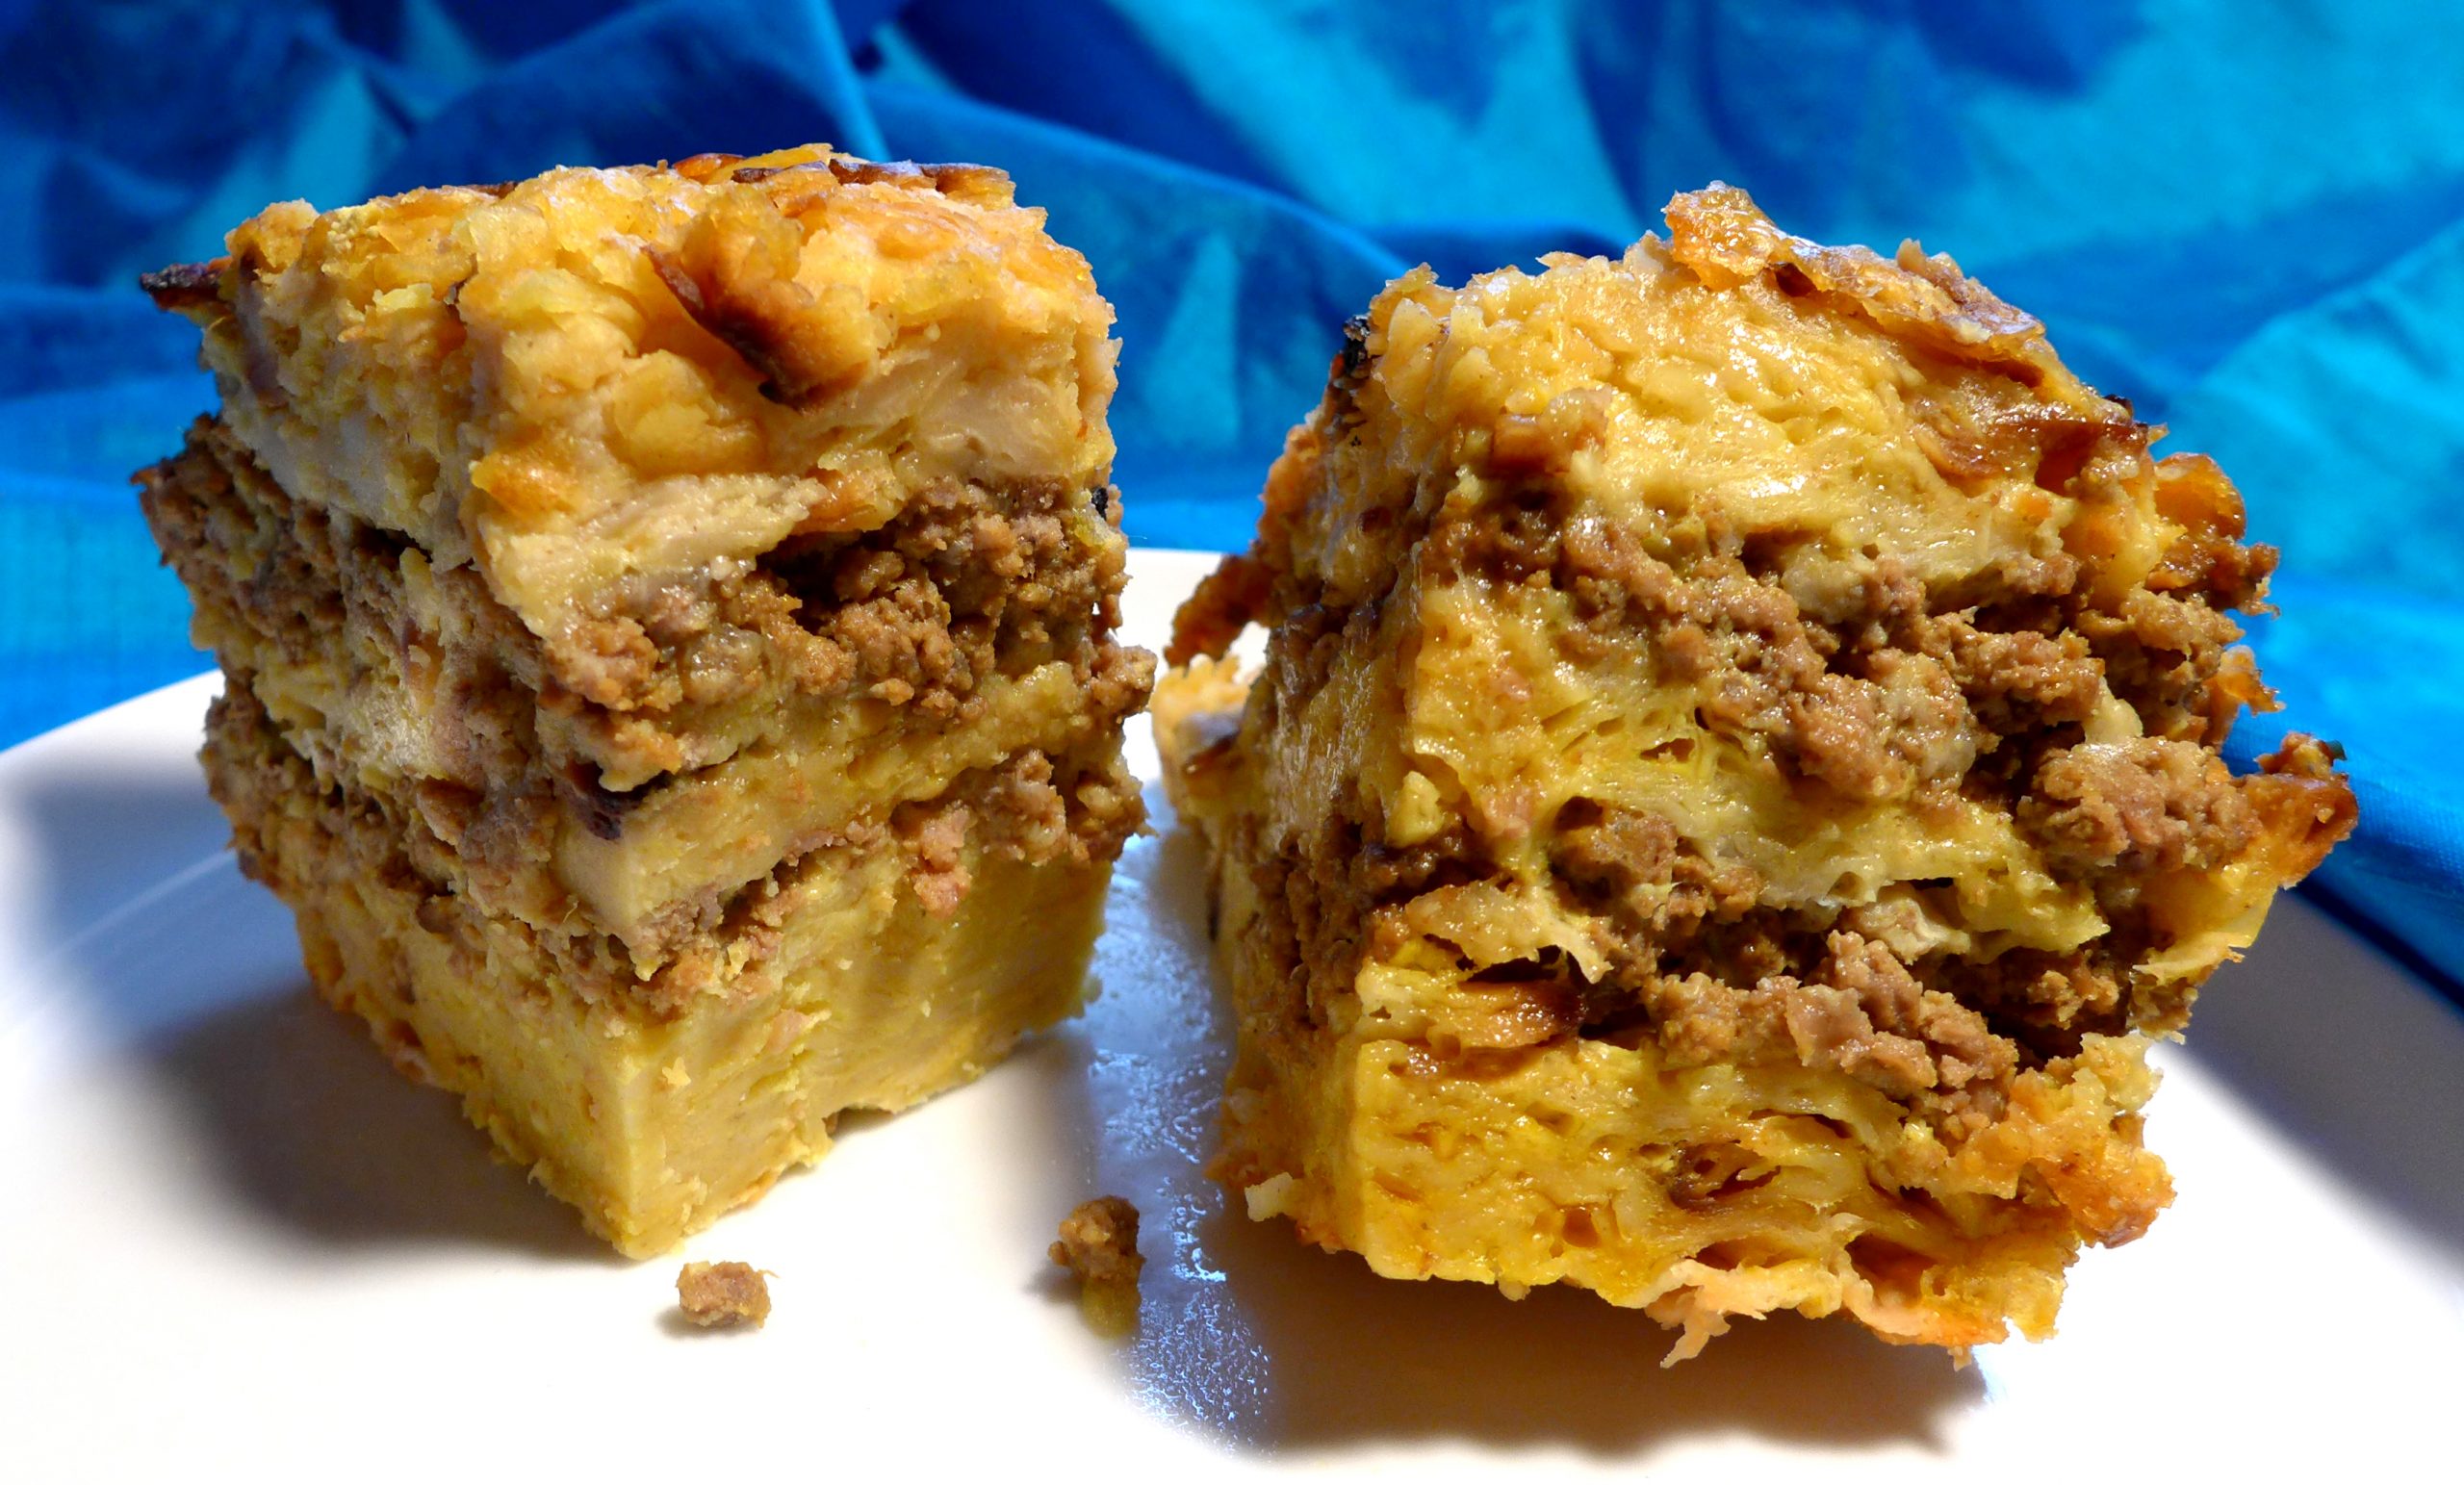 PASTEL de TORTA: Gibraltarian Matzah “Lasagna” with Ground Beef, Turmeric, and Nutmeg